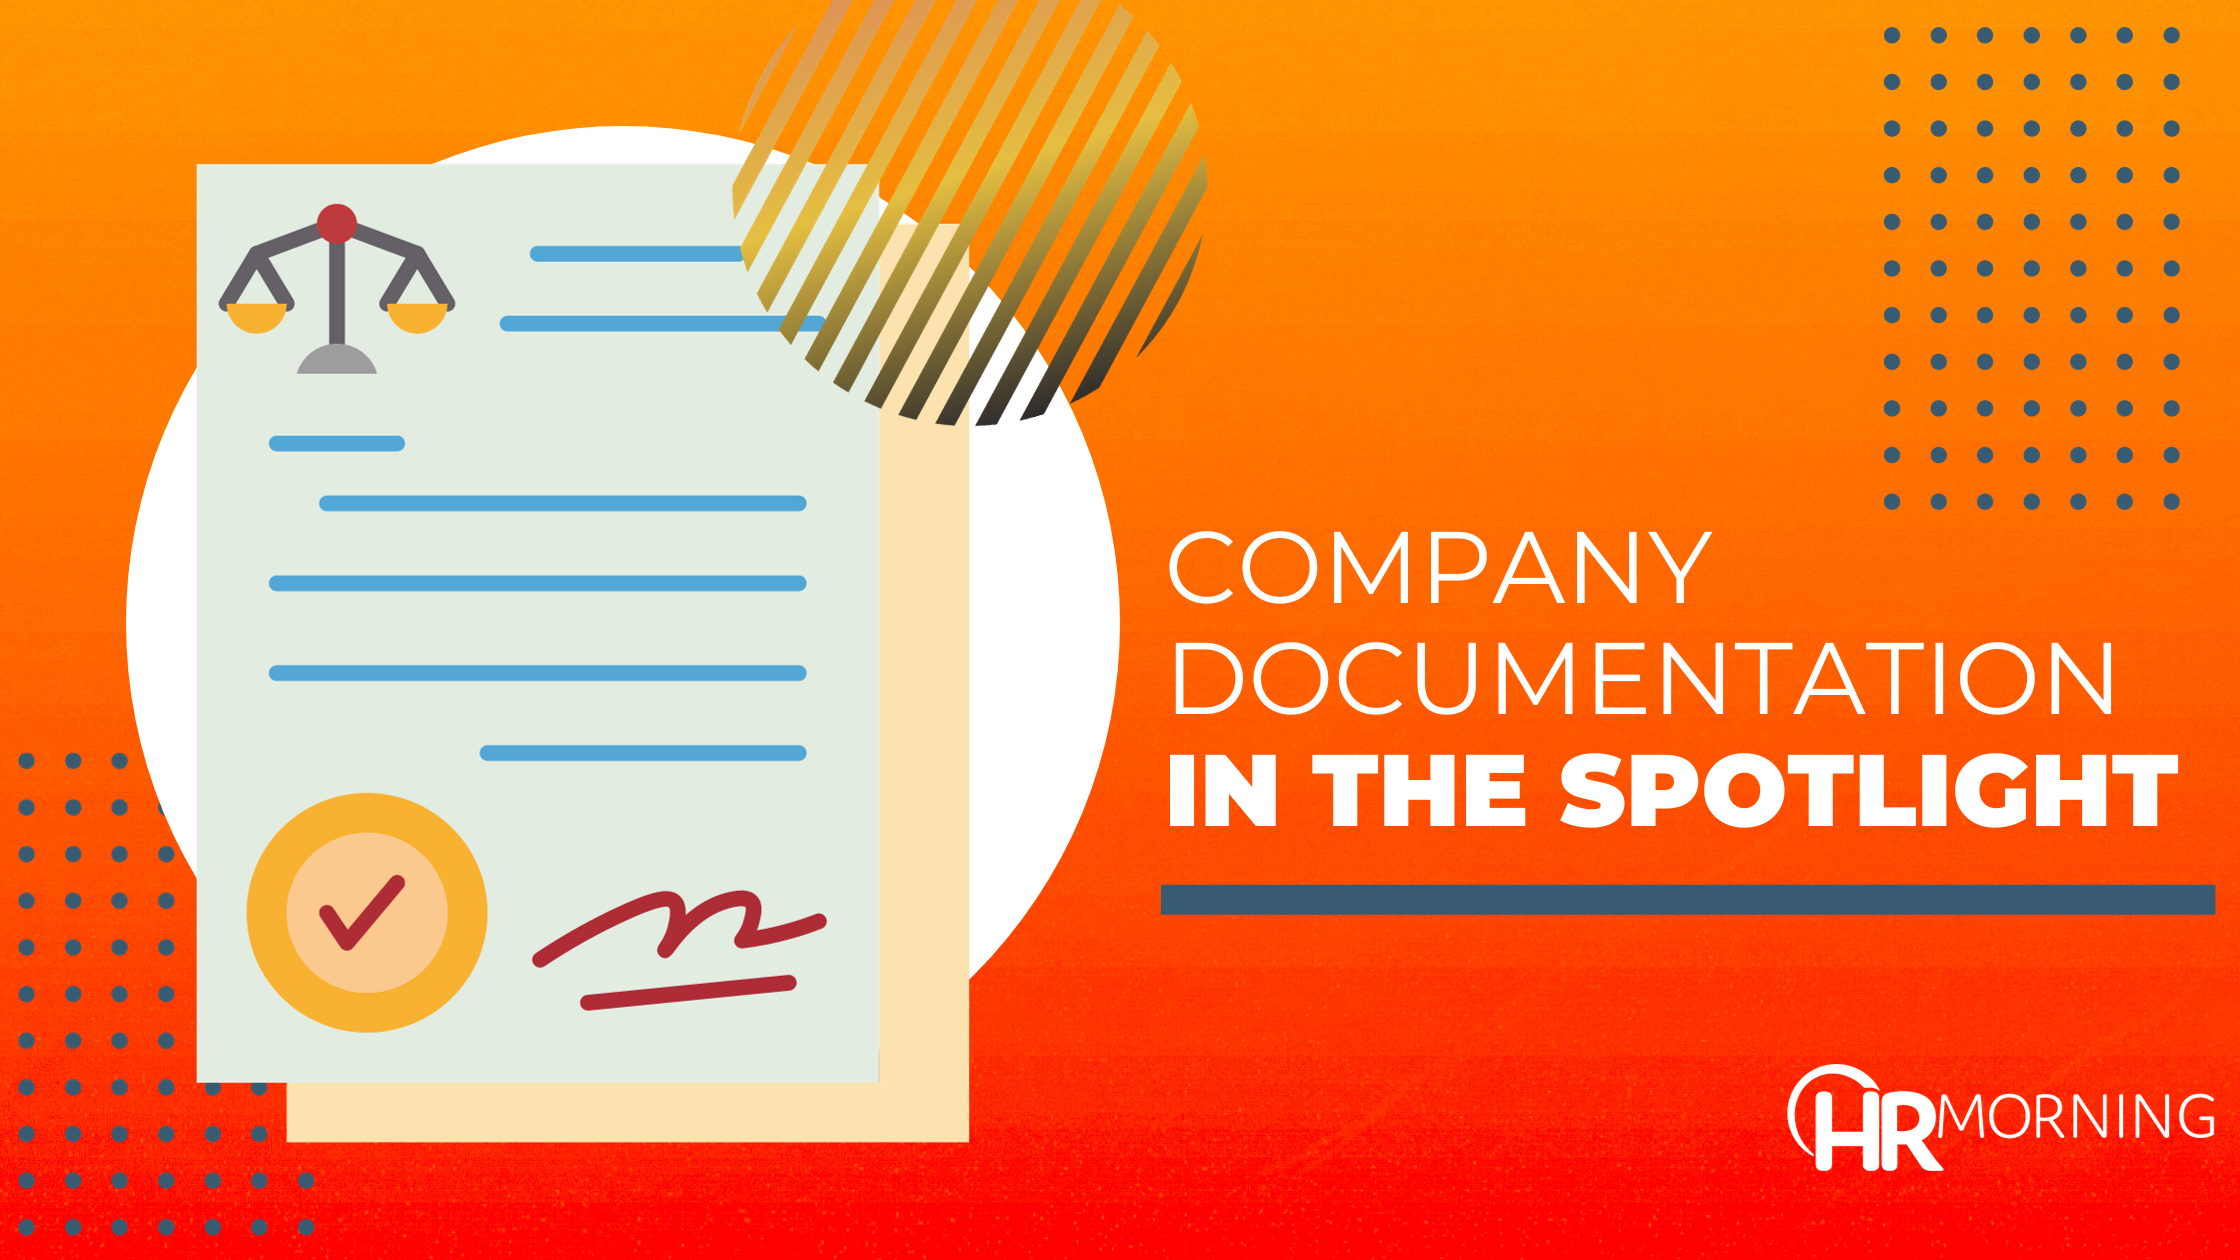 Company documentation in the spotlight